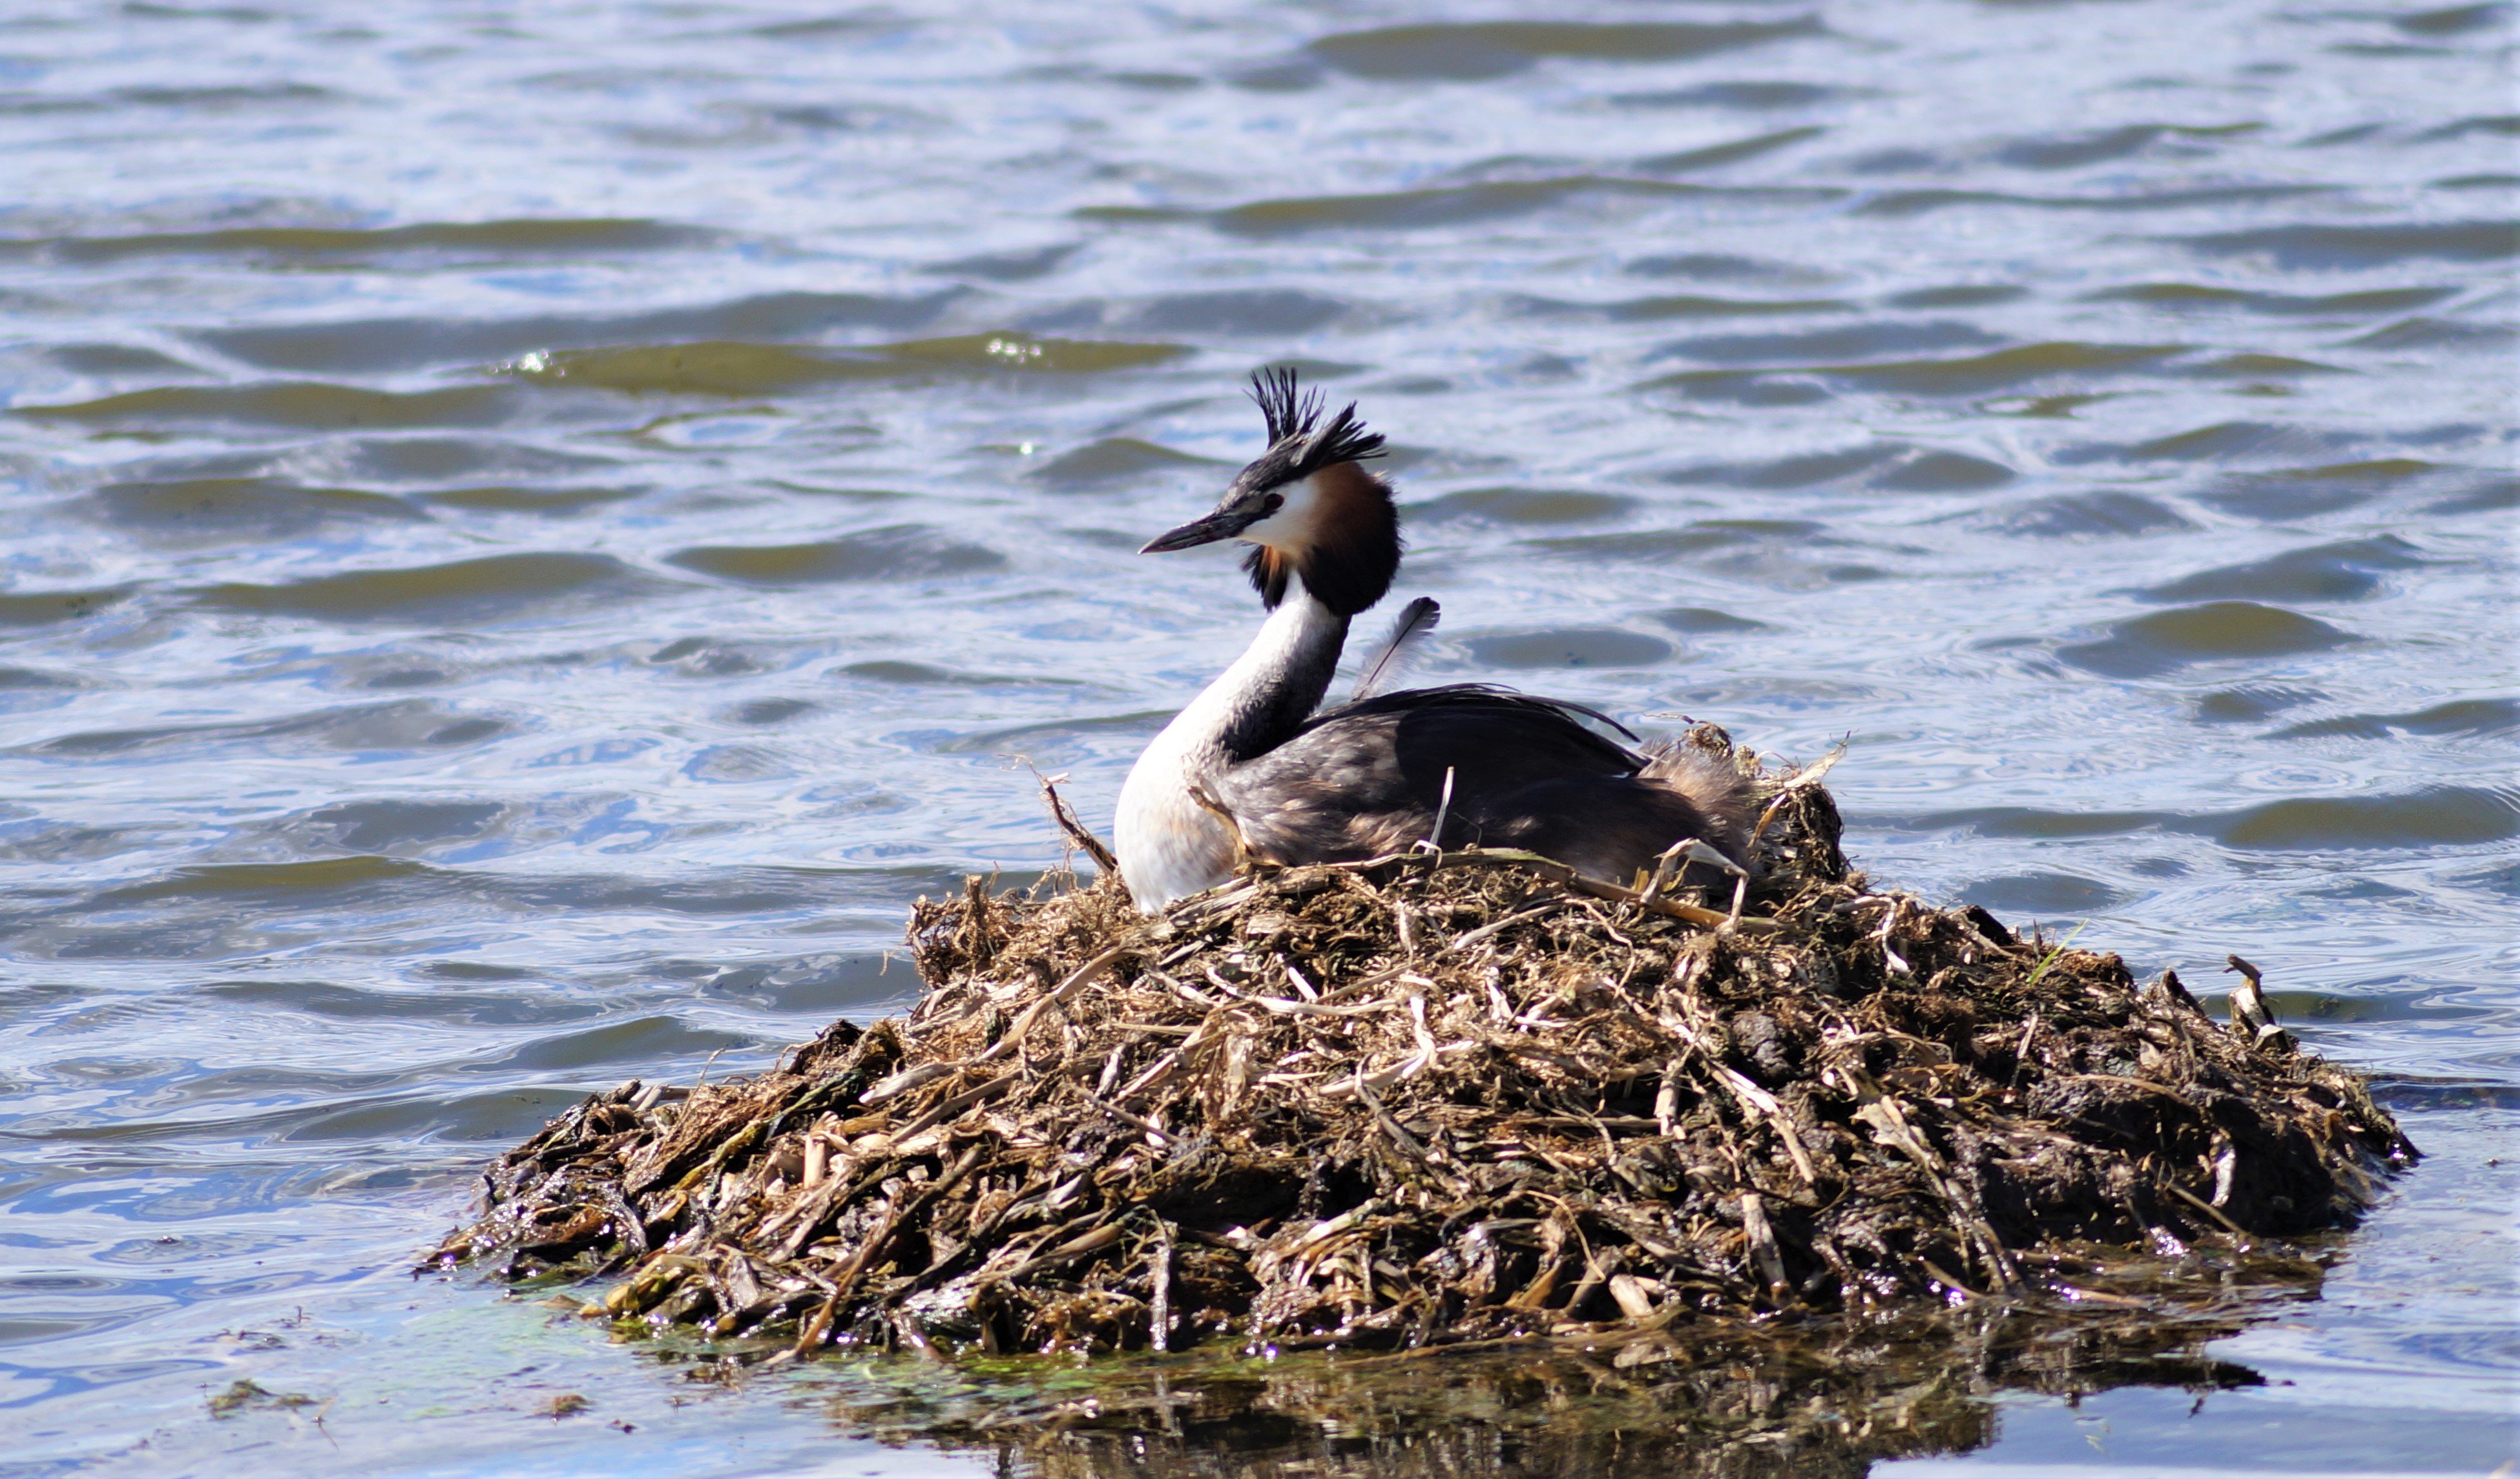 En häckande fågel, en skäggdopping, på ett bo omgivet av vatten.